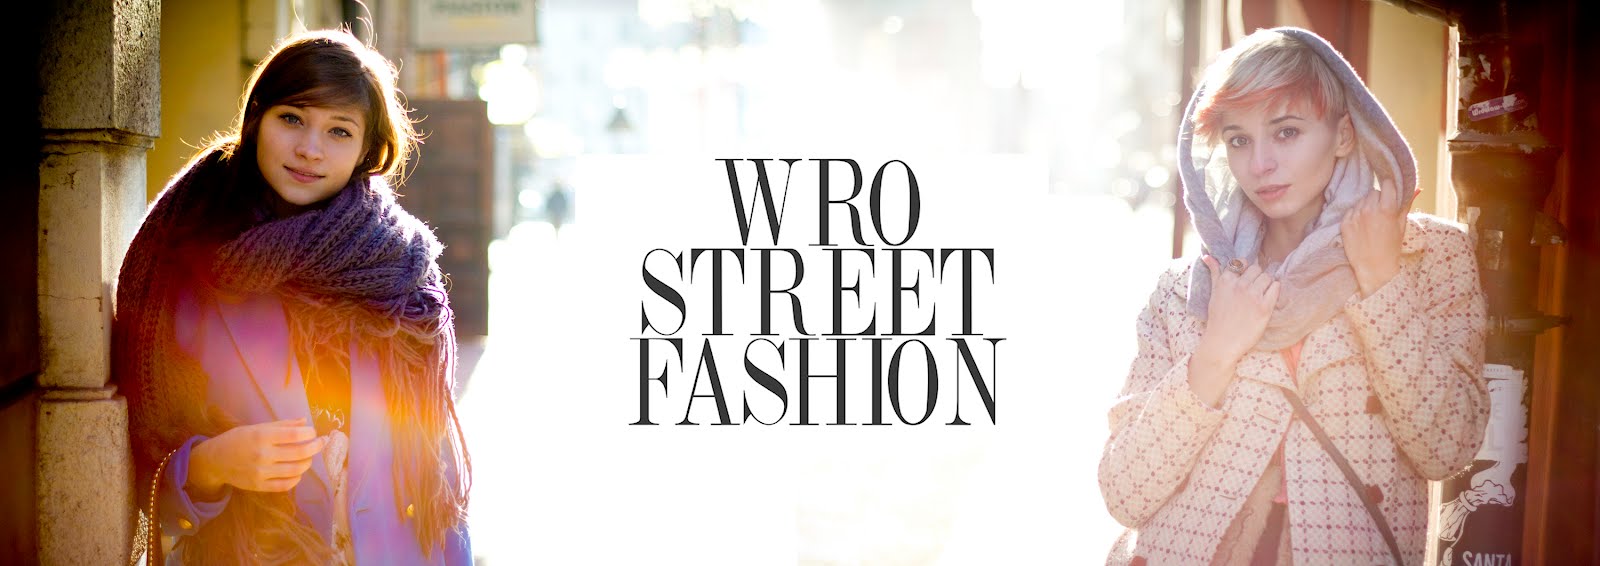 Wro Street Fashion